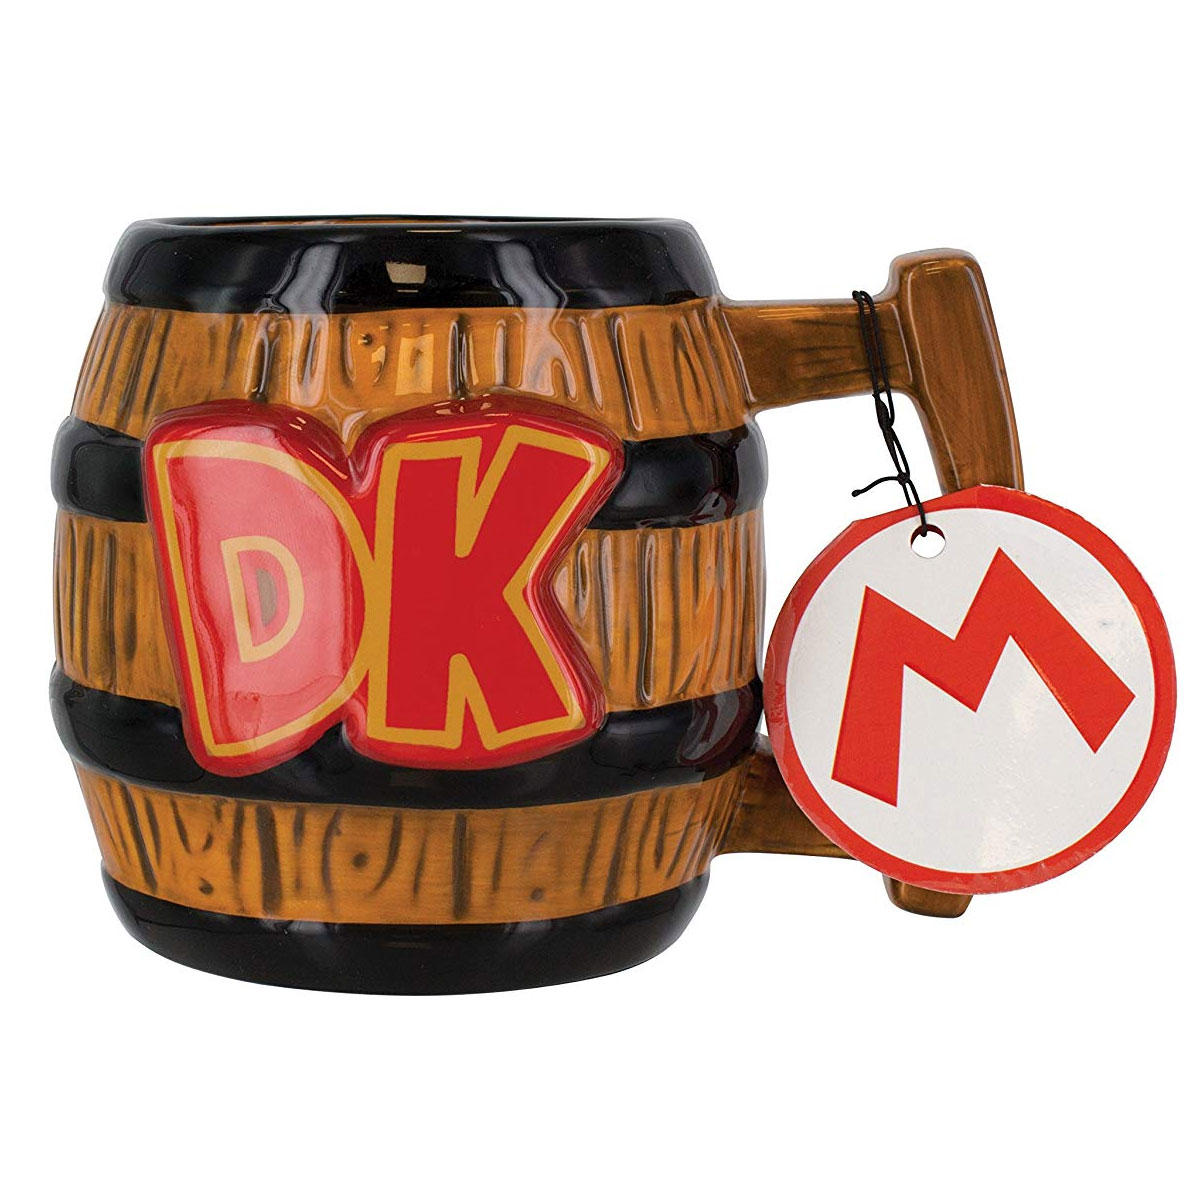 Donkey Kong It's On Like Boxed Mug Ceramic Gift Box 